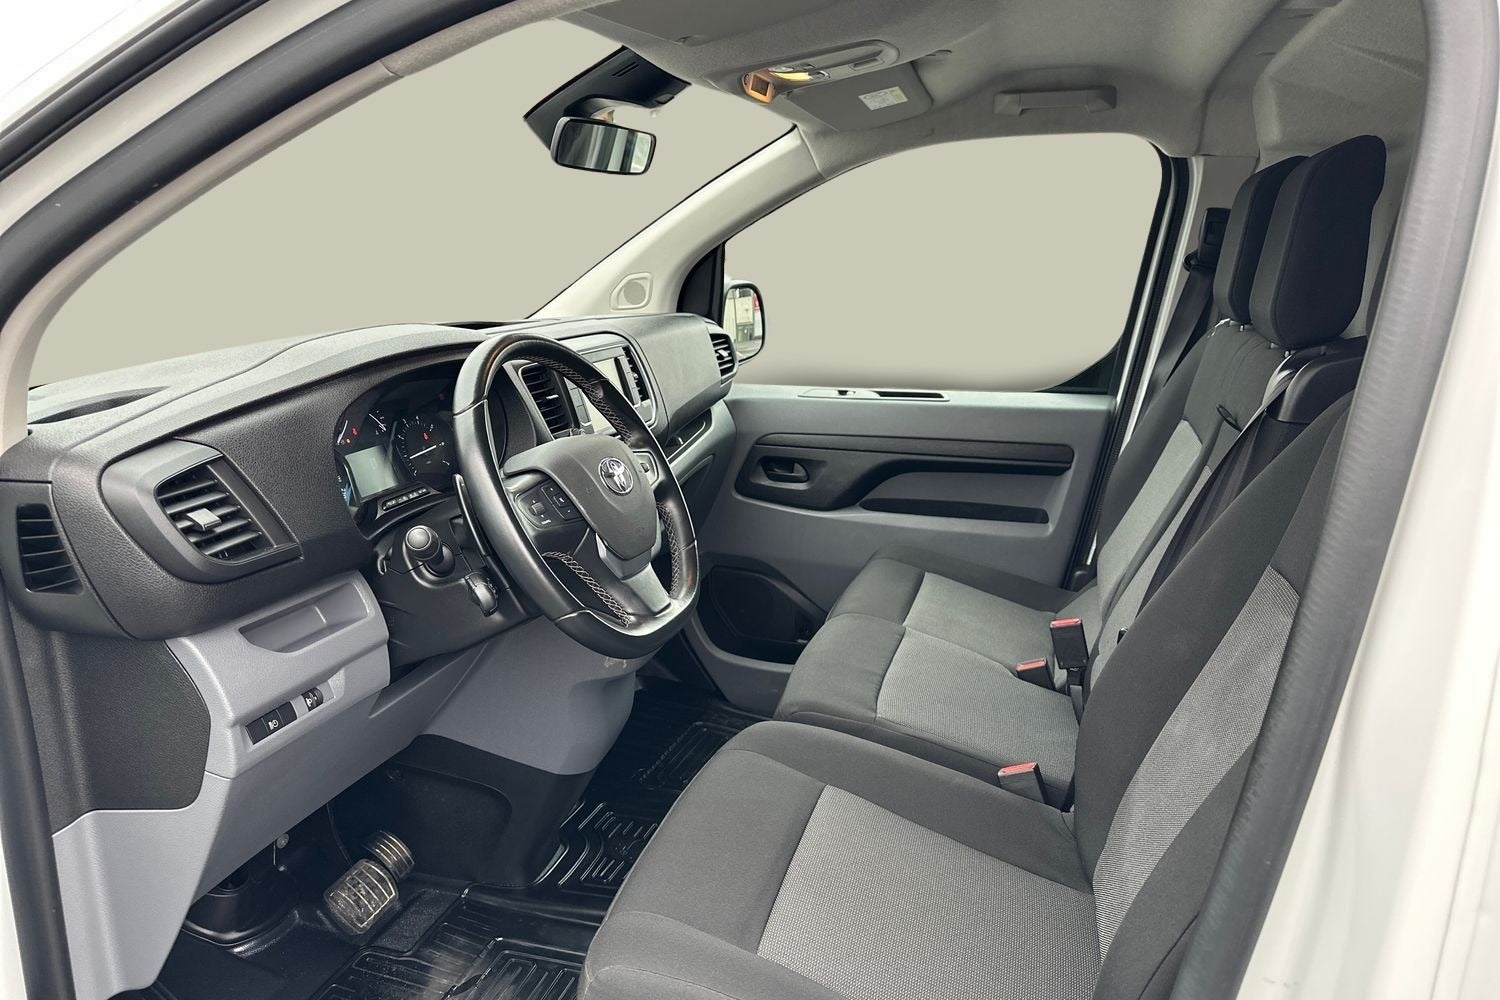 Billede af Toyota ProAce 2,0 D 144 Long Comfort Master aut.